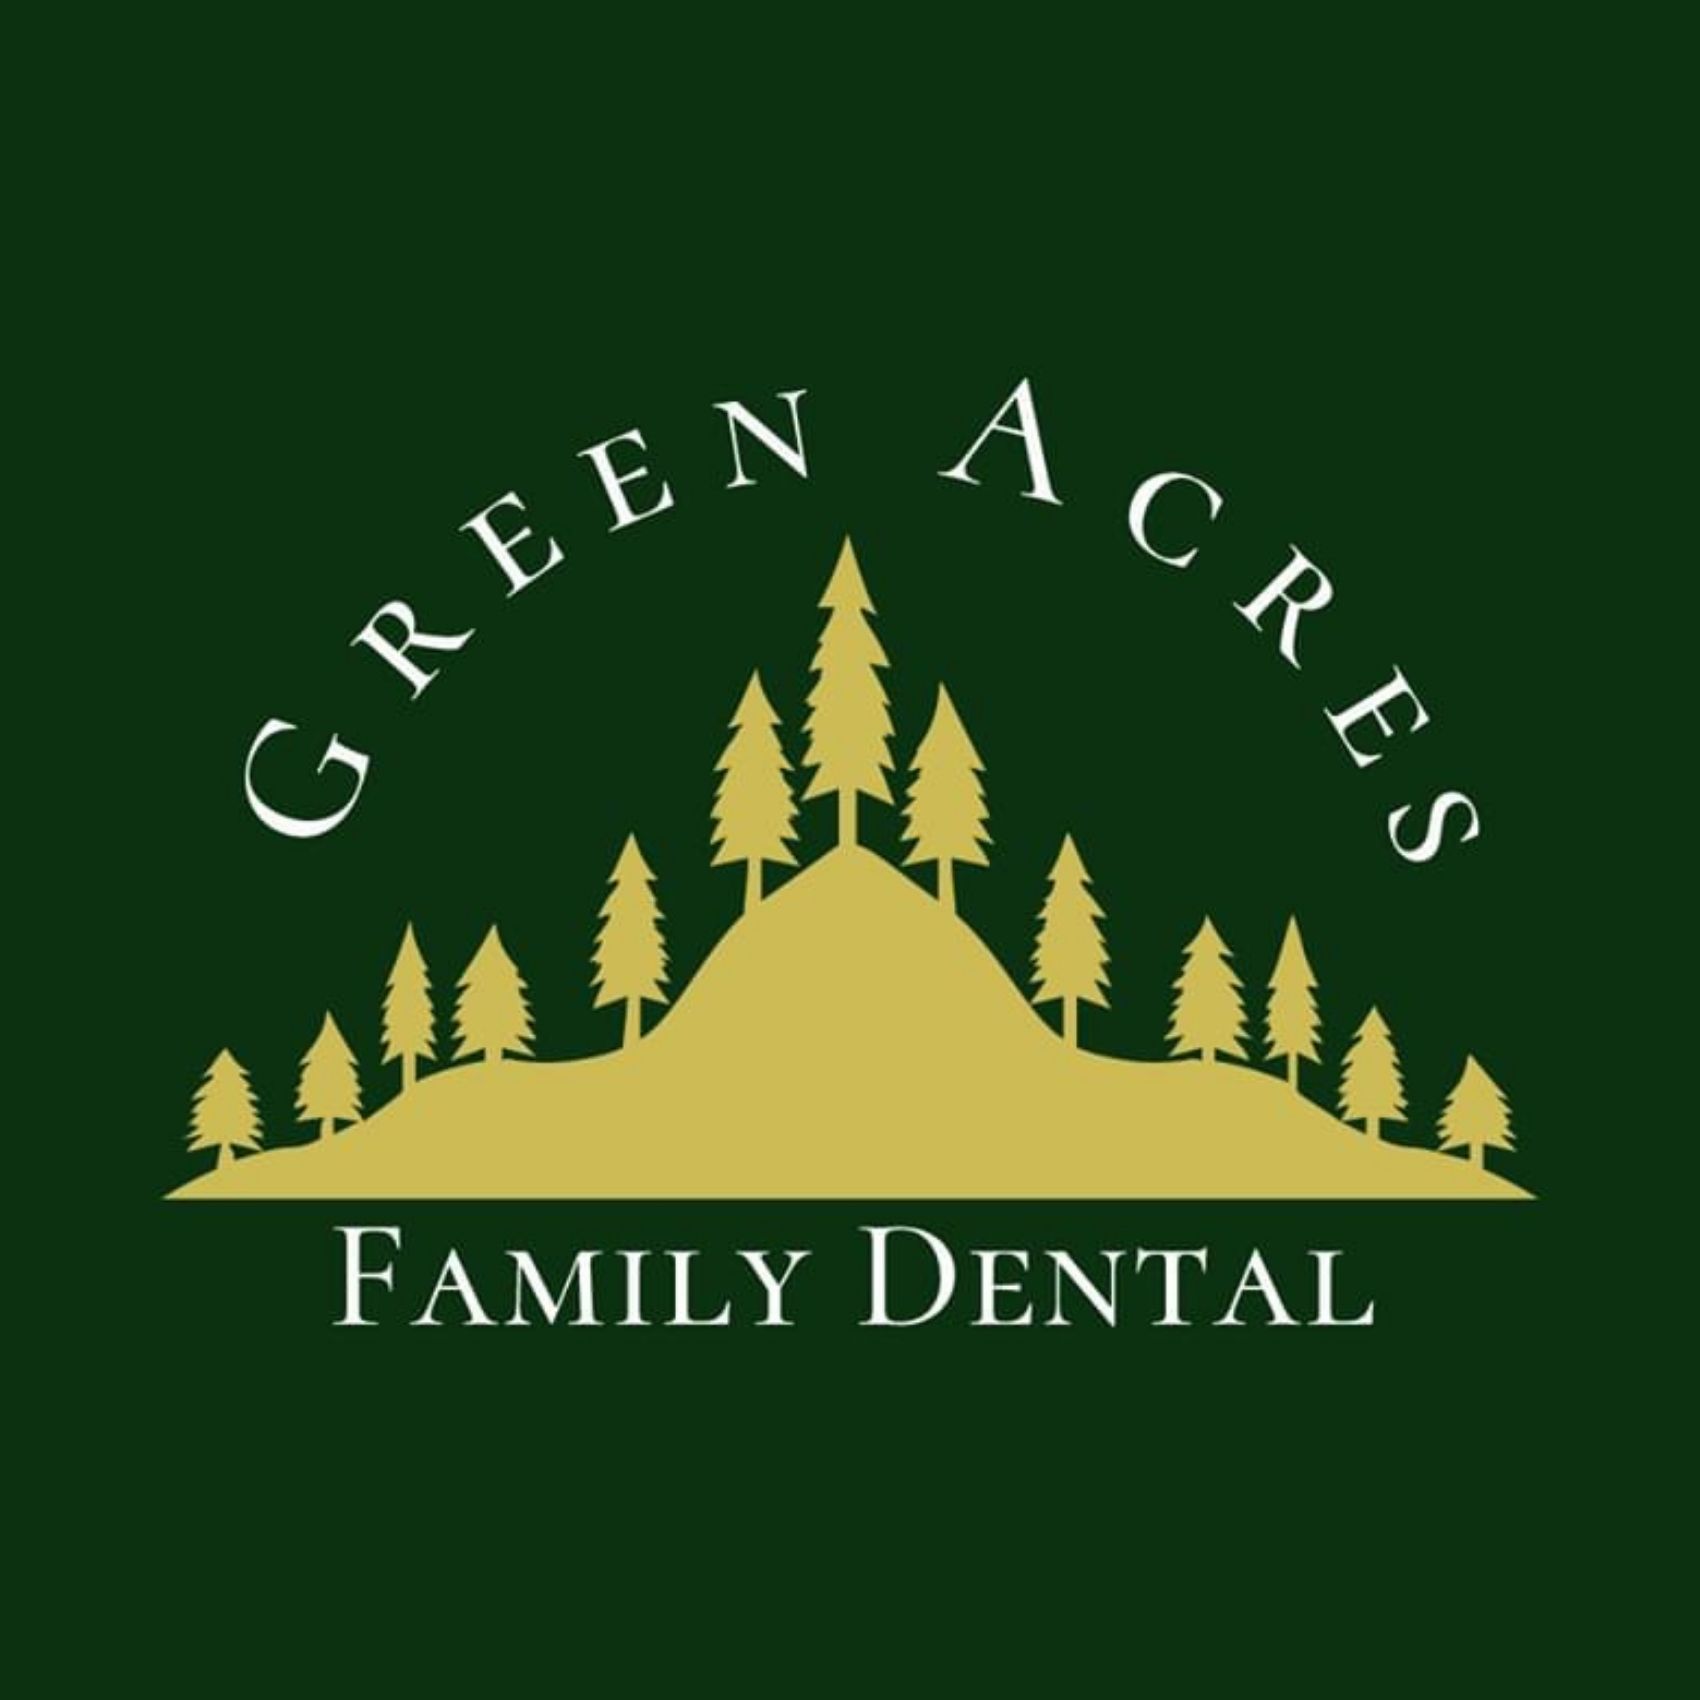 Green Acres Family Dental